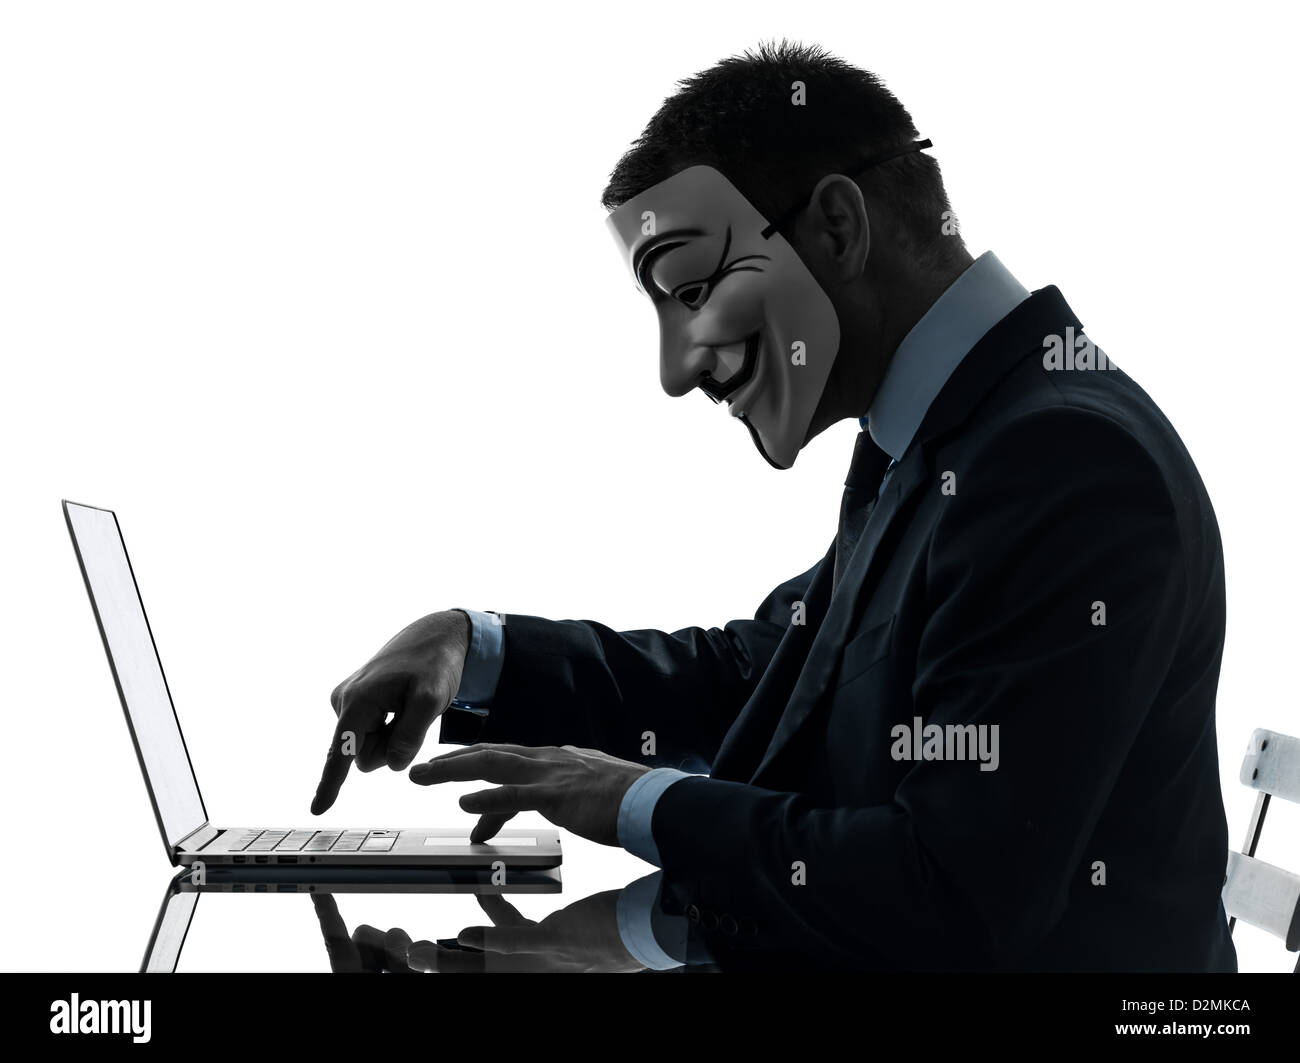 Paris, France - 30 octobre 2012 : un homme masqué et habillé comme un membre du groupe underground anonyme ordinateur informatique membre le 30 octobre 2012 à Paris, France Banque D'Images